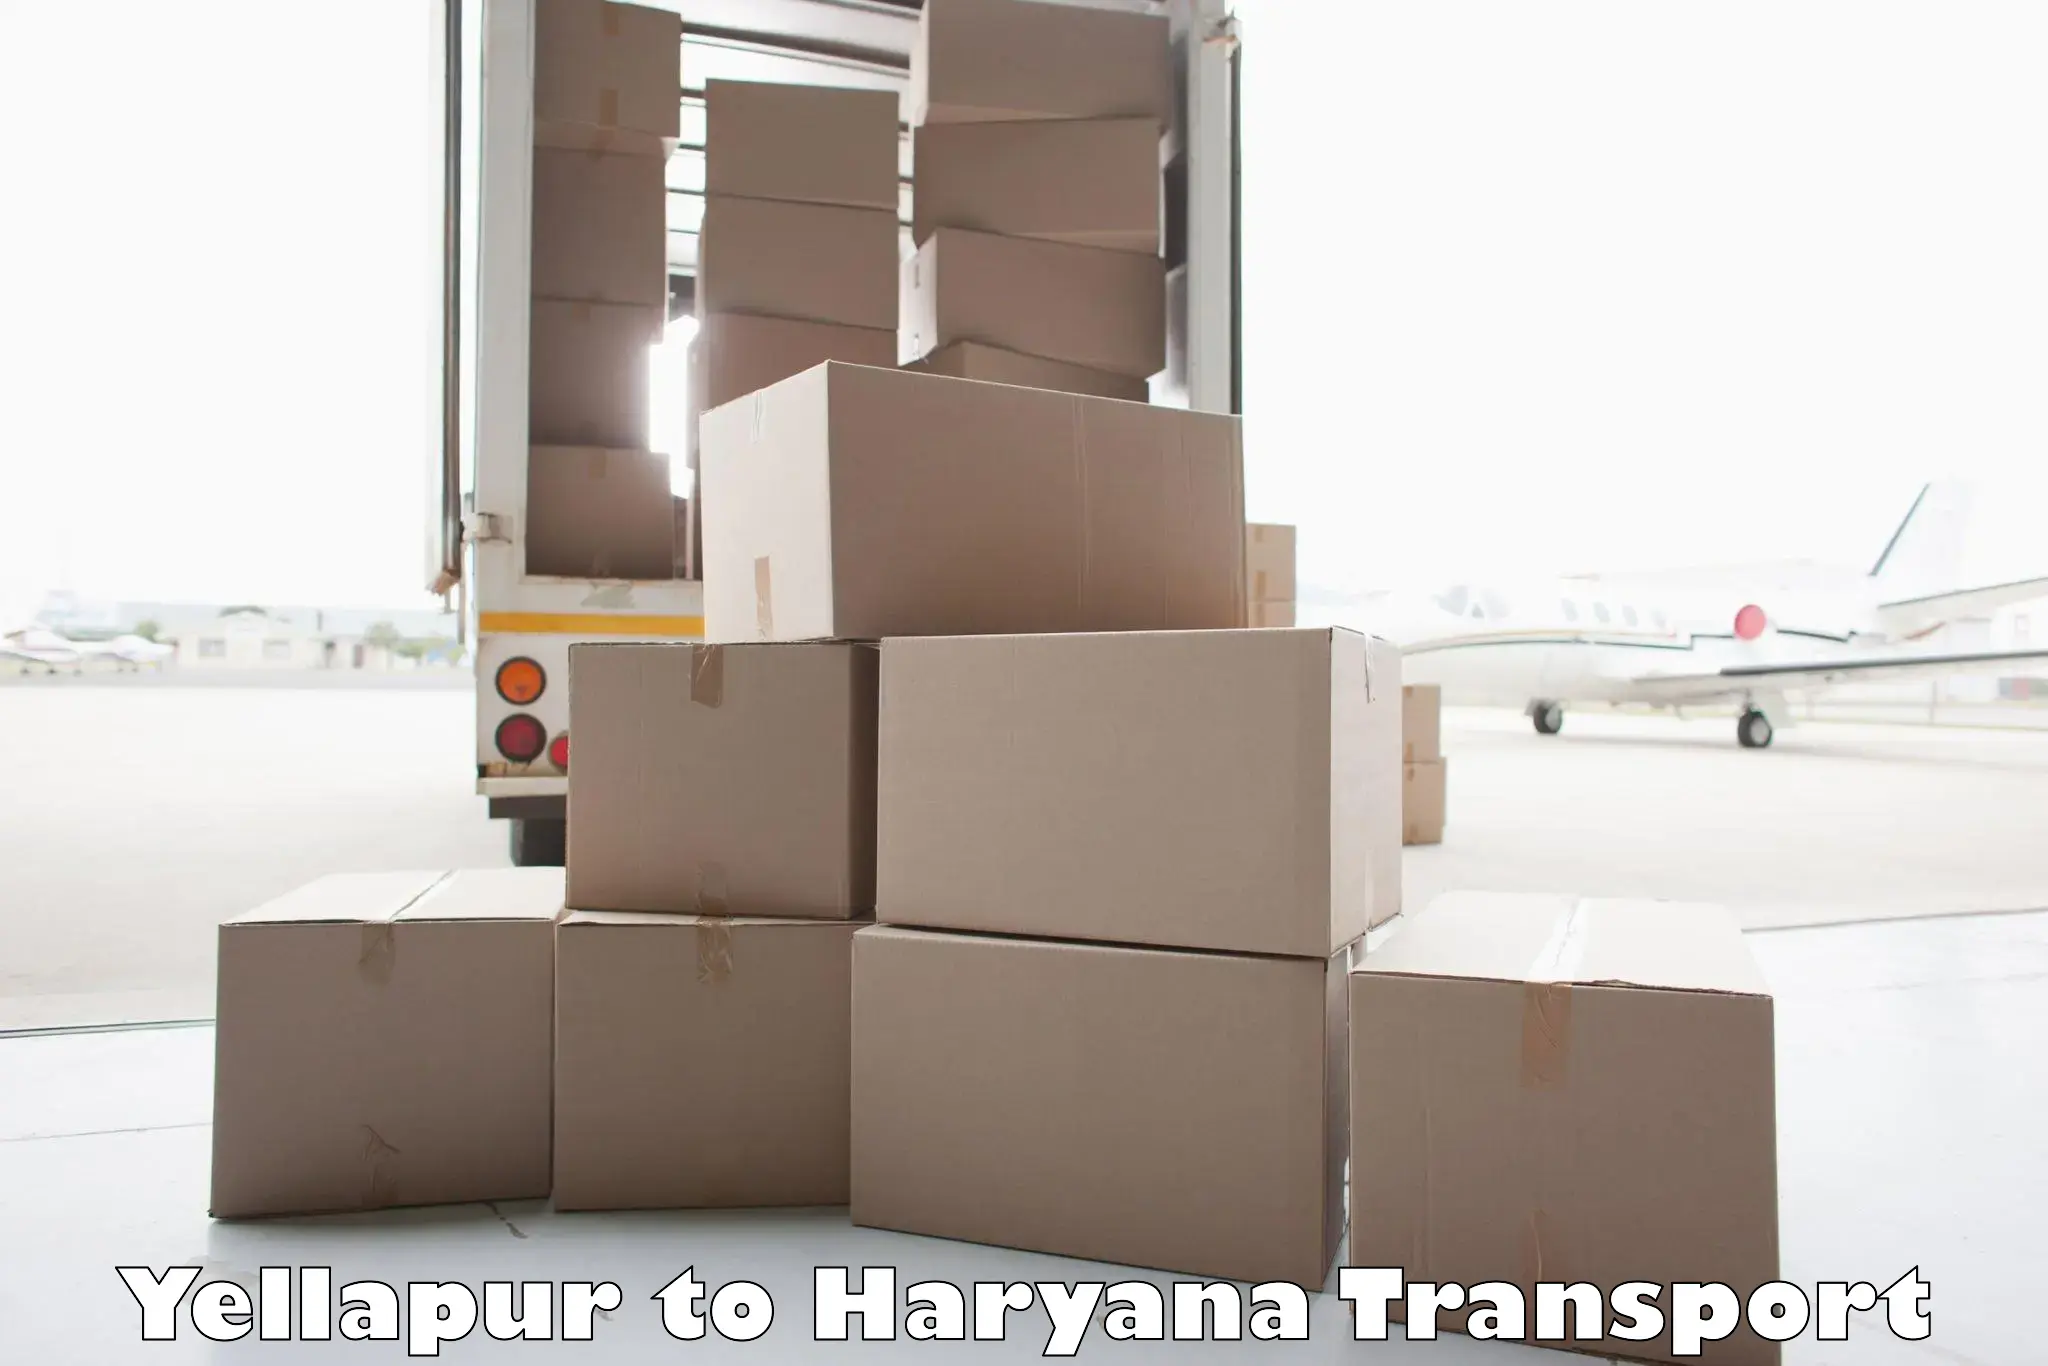 Furniture transport service Yellapur to Odhan